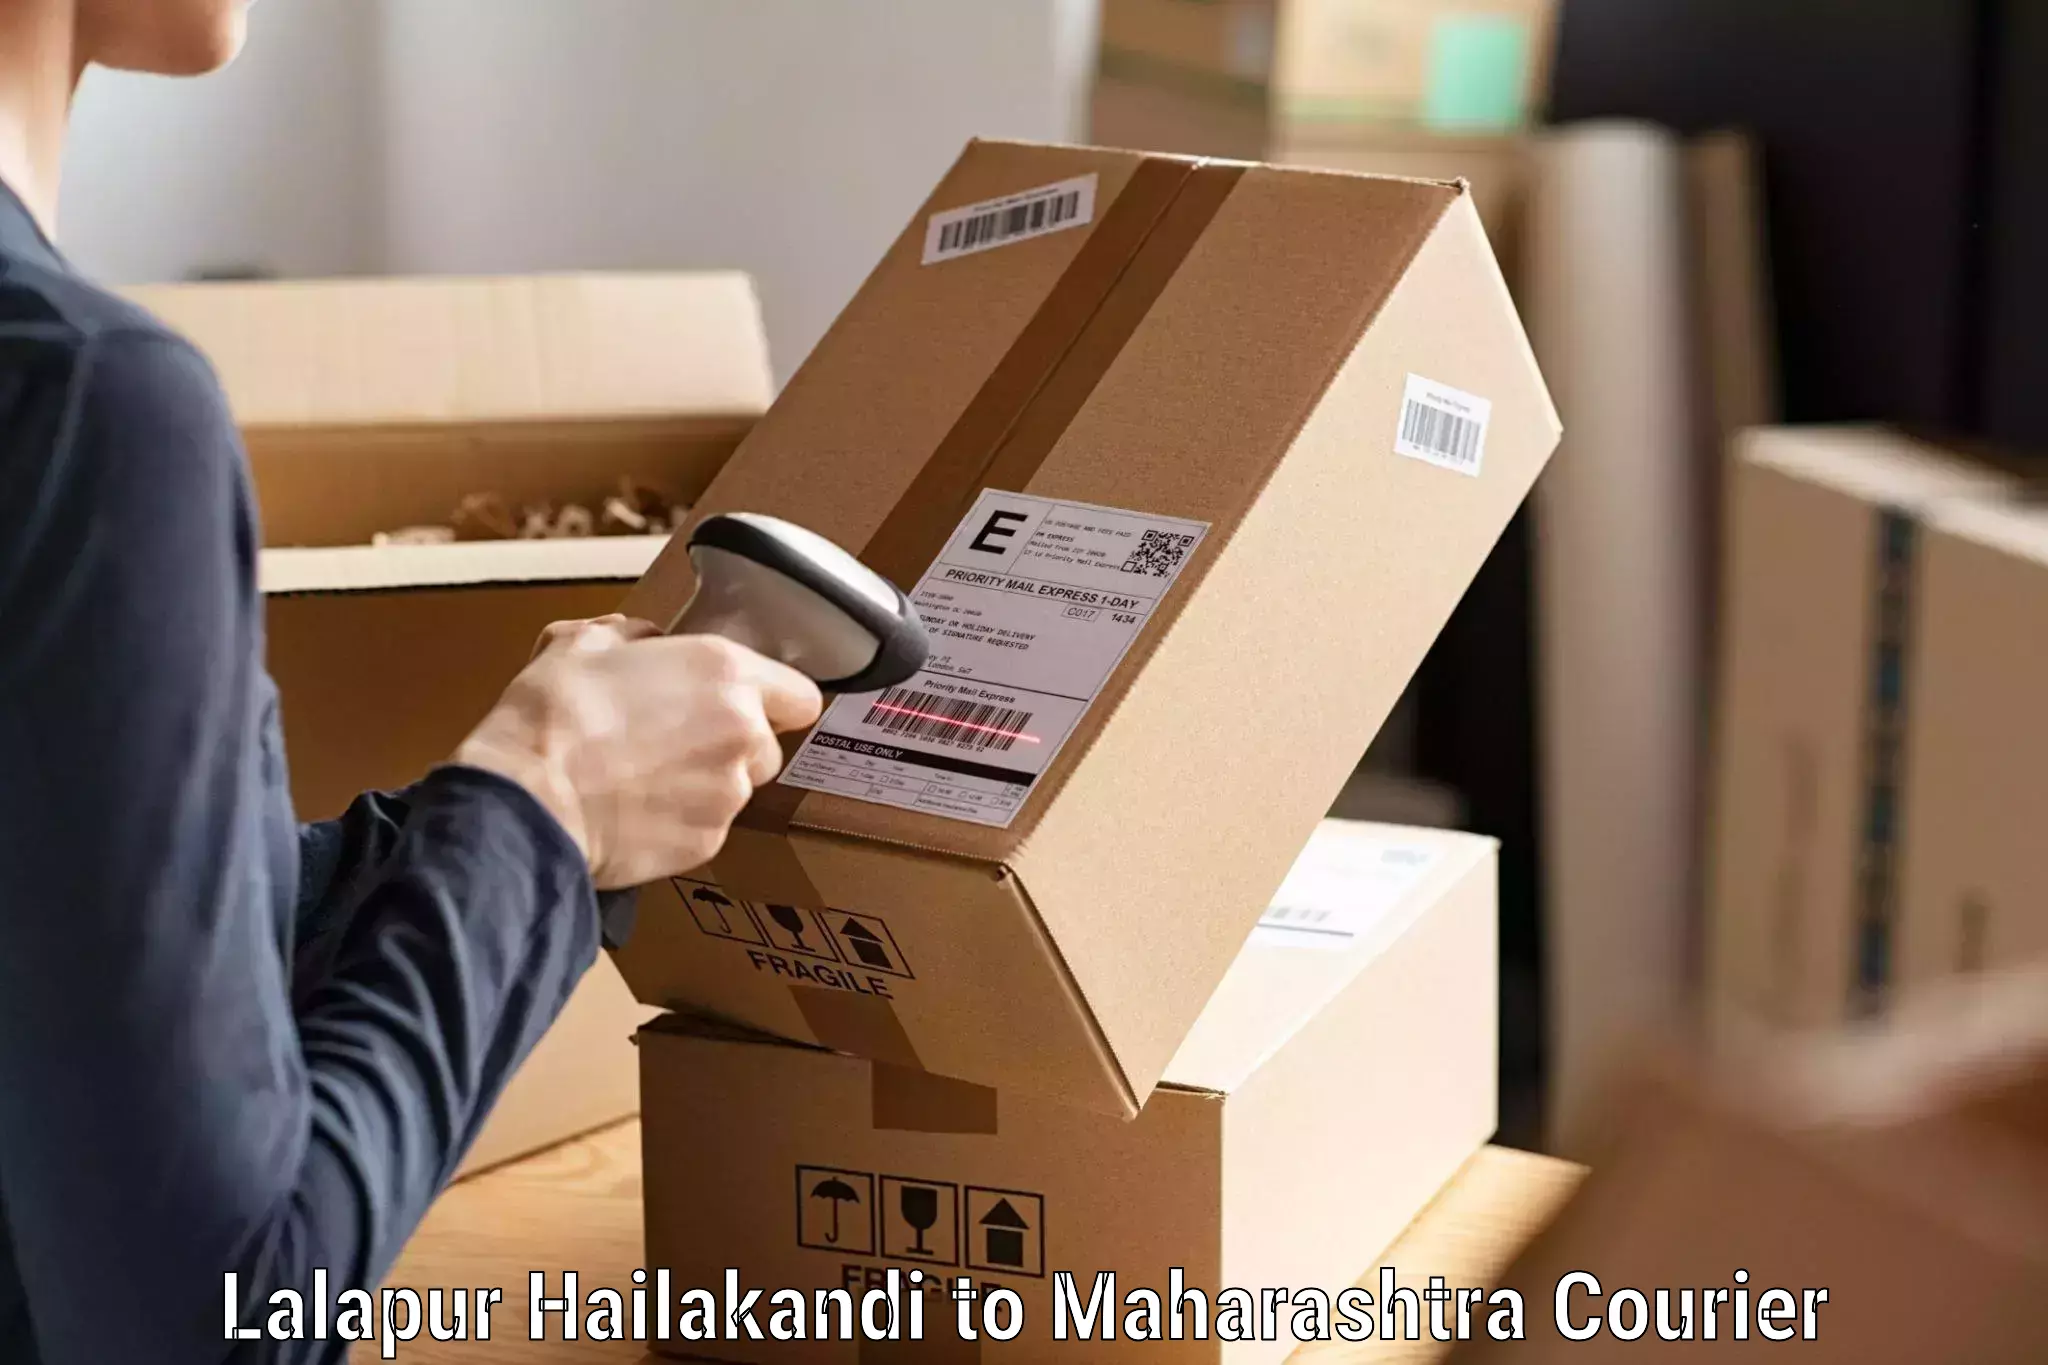 Courier services in Lalapur Hailakandi to Maharashtra